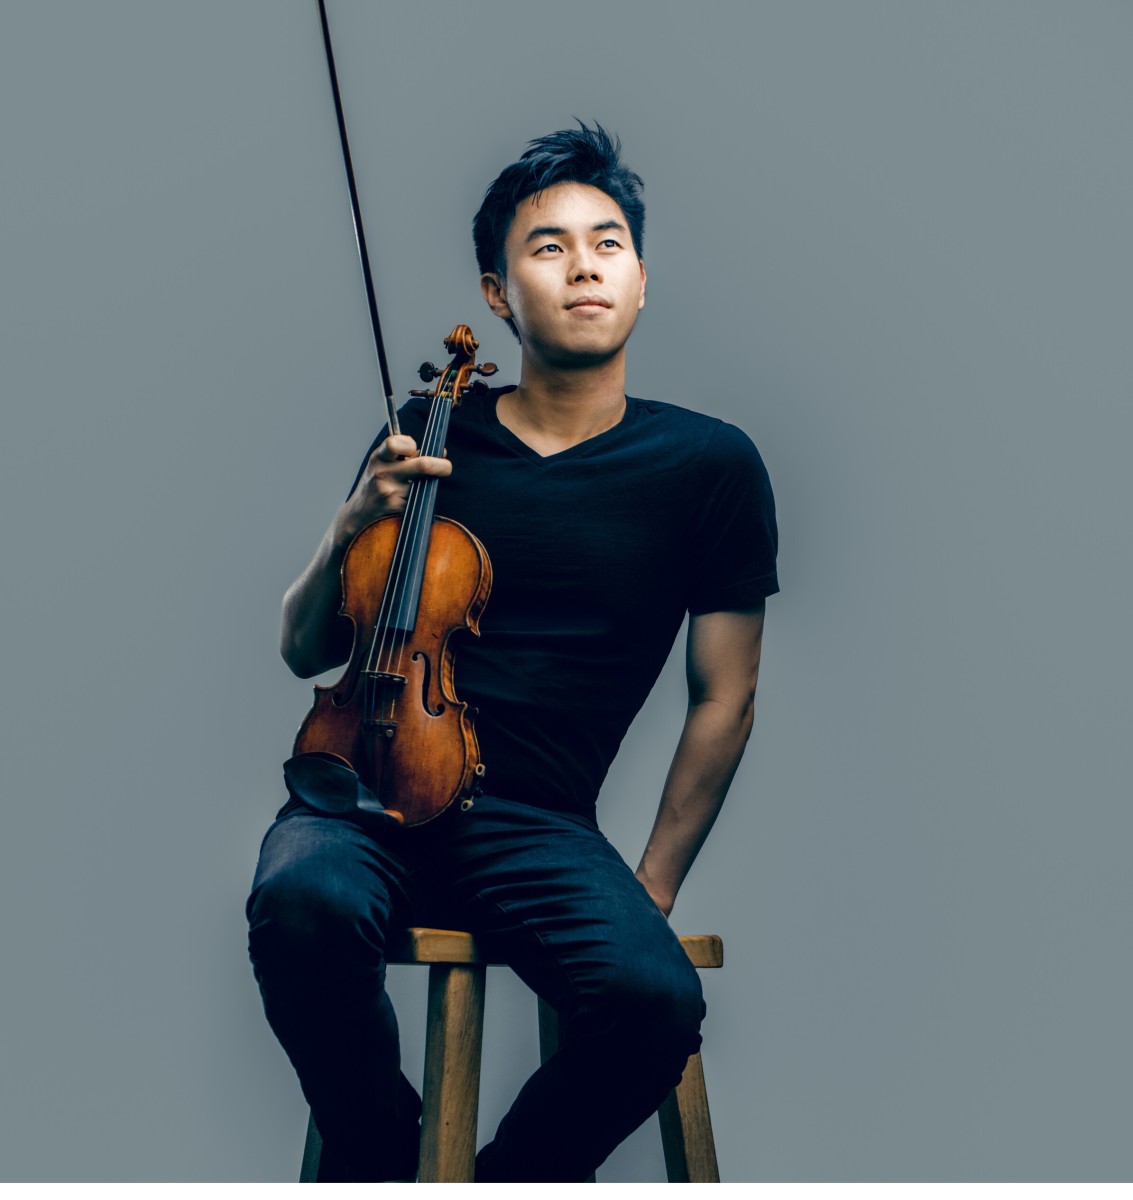 Fotos: 1. Der junge kanadisch-amerikanische Dirigent und Solist Timothy Chooi konnte für das Meisterkonzert gewonnen werden